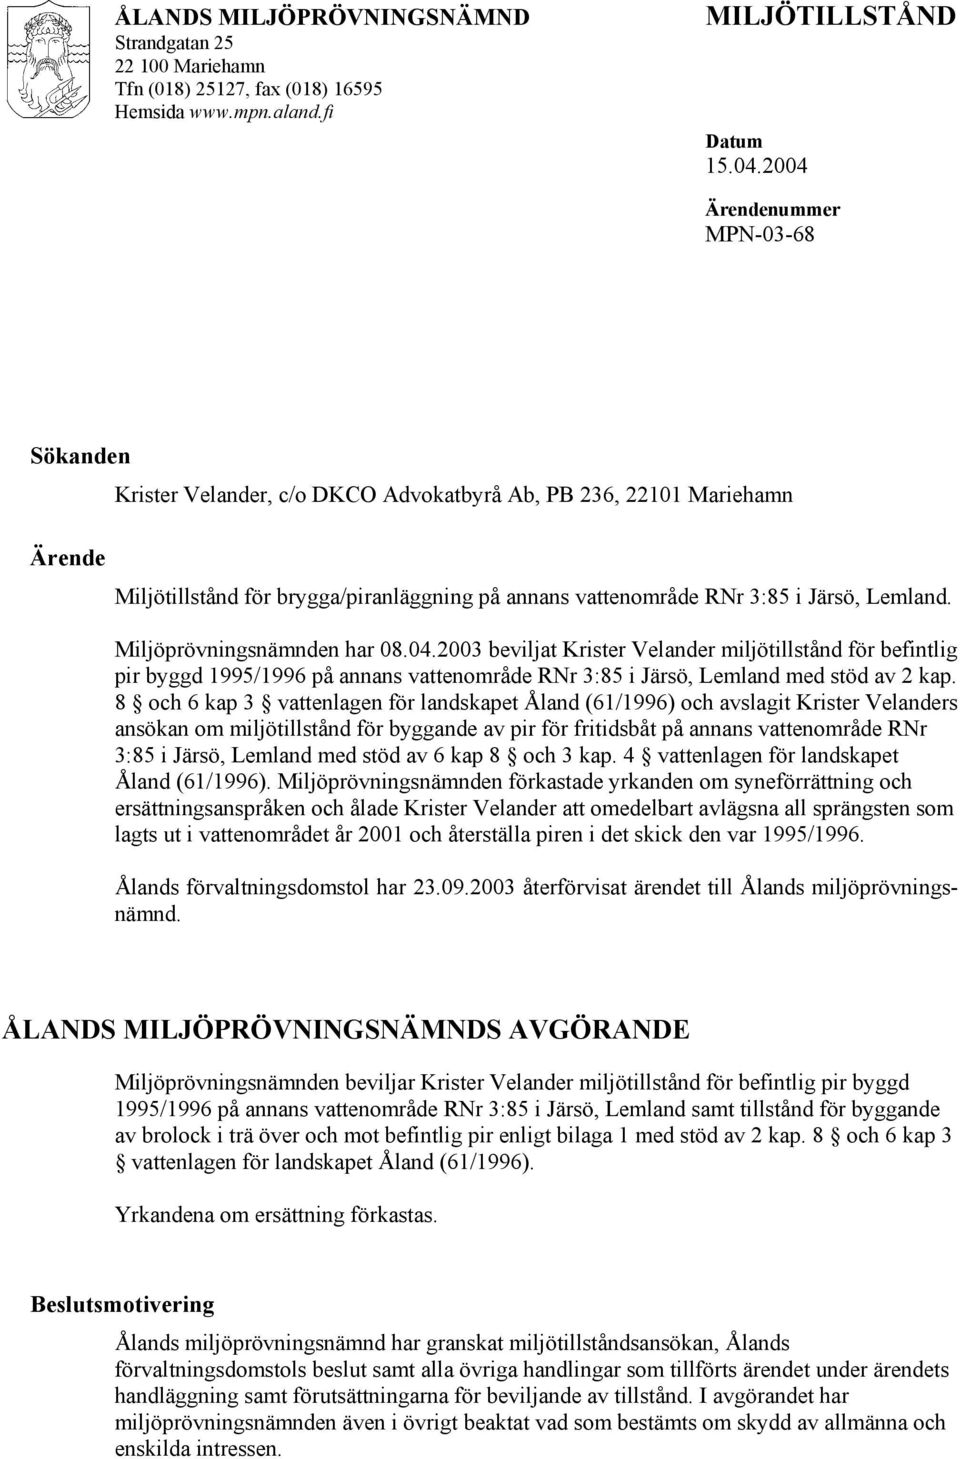 Miljöprövningsnämnden har 08.04.2003 beviljat Krister Velander miljötillstånd för befintlig pir byggd 1995/1996 på annans vattenområde RNr 3:85 i Järsö, Lemland med stöd av 2 kap.